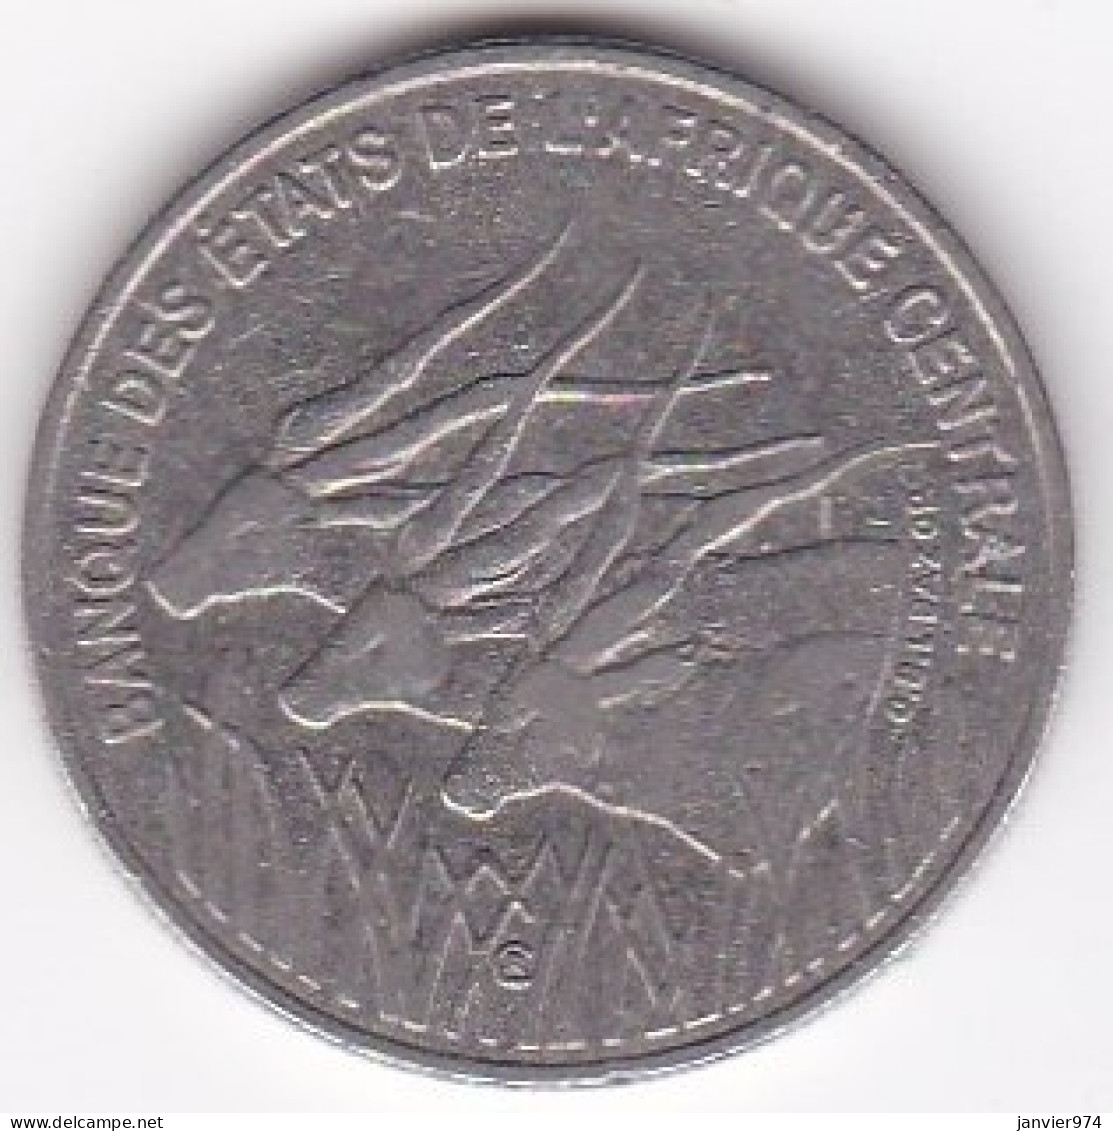 Banque Des Etats De L’Afrique Centrale (B.E.A.C.) 100 Francs 2003, En Nickel, KM# 13 - Other - Africa